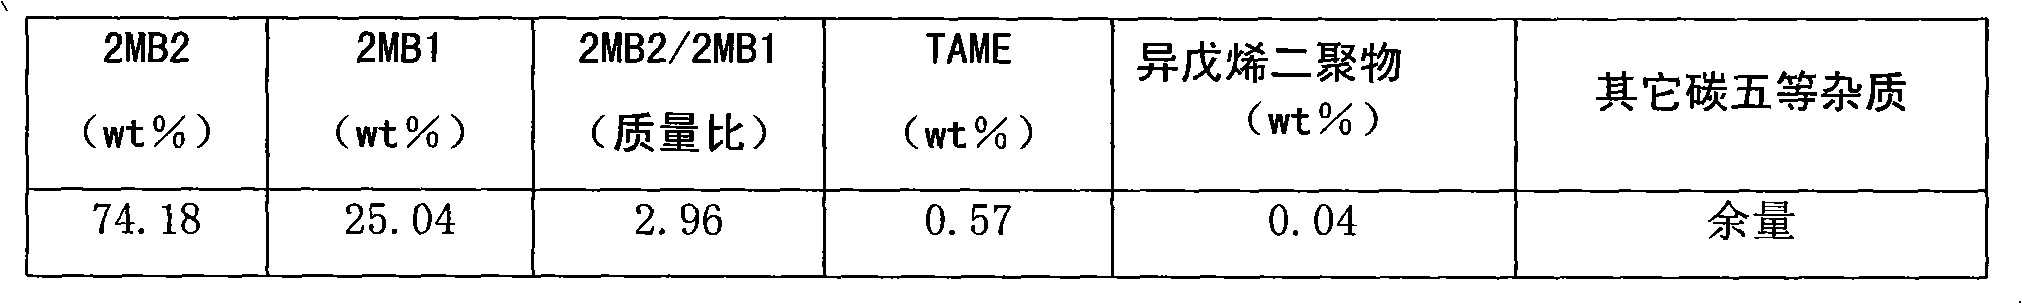 Isomerization method of 2-methyl-1-butylene